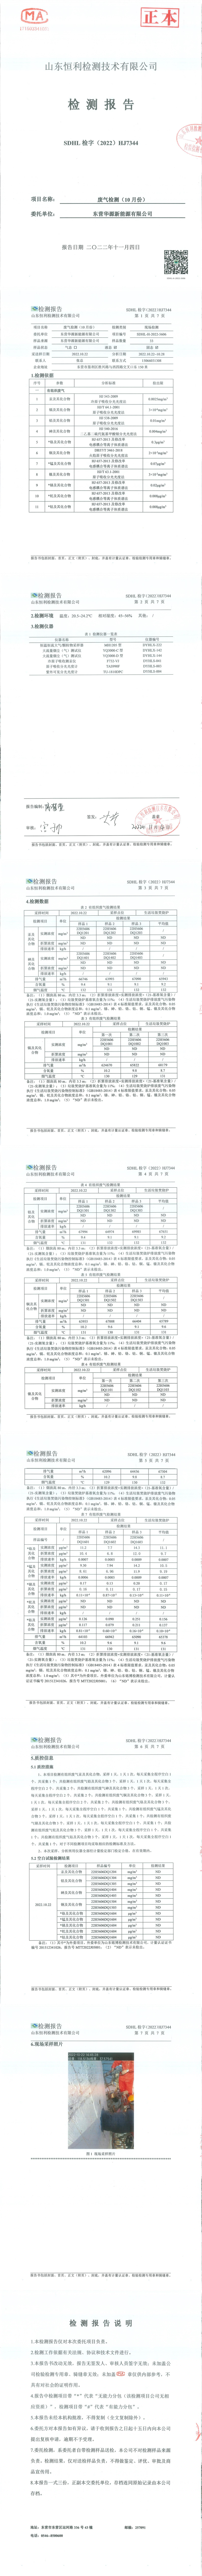 東營華源新能源有限公司第四季度檢測信息公示(圖1)